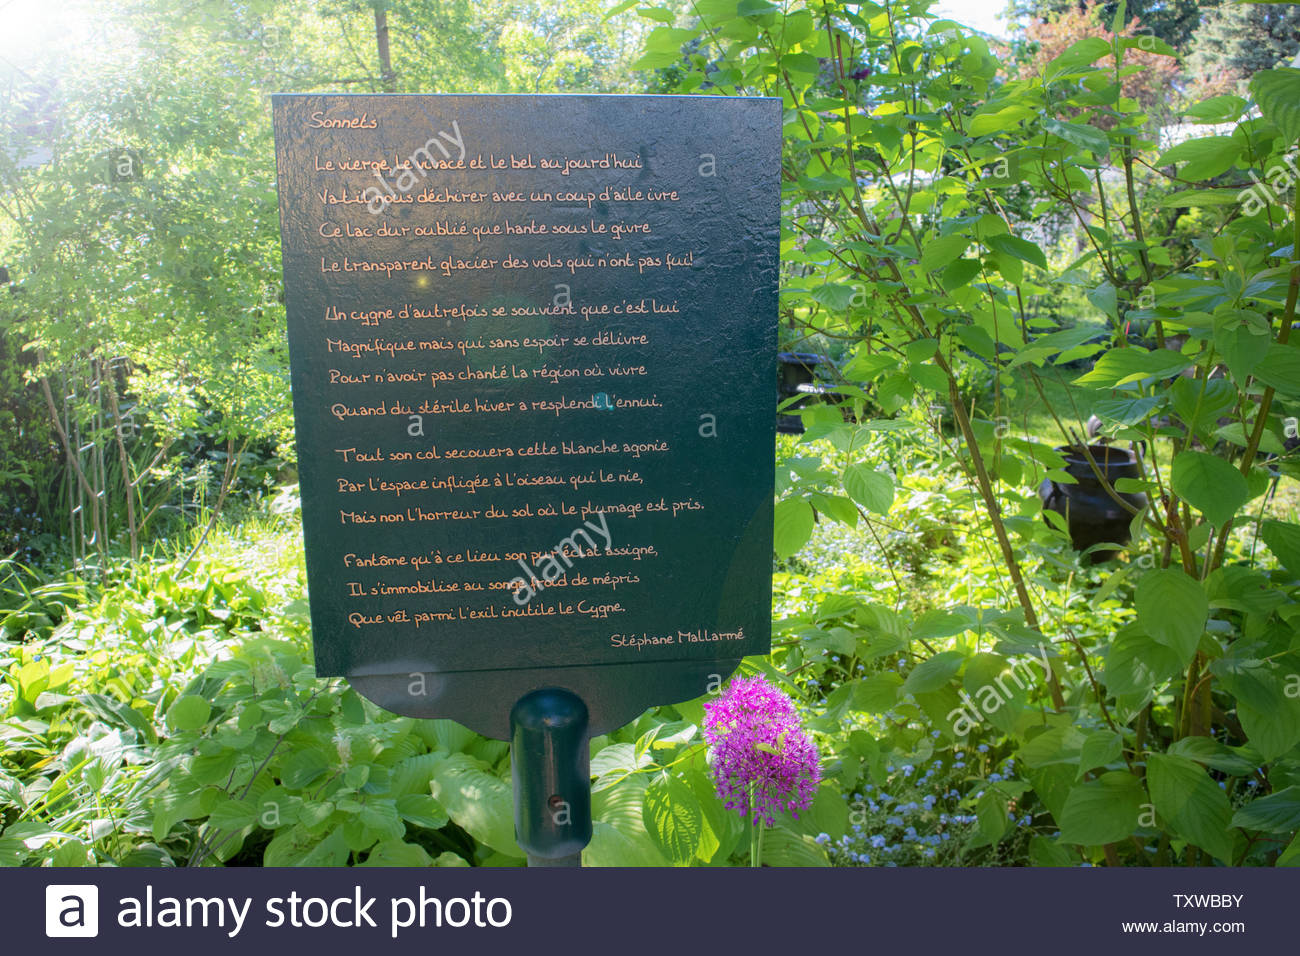 quelqu un a plante un genre de plaque memorative dans leur jardin il s agit d un poeme de stephane mallarme appele sonnets niagara on the lake txwbby